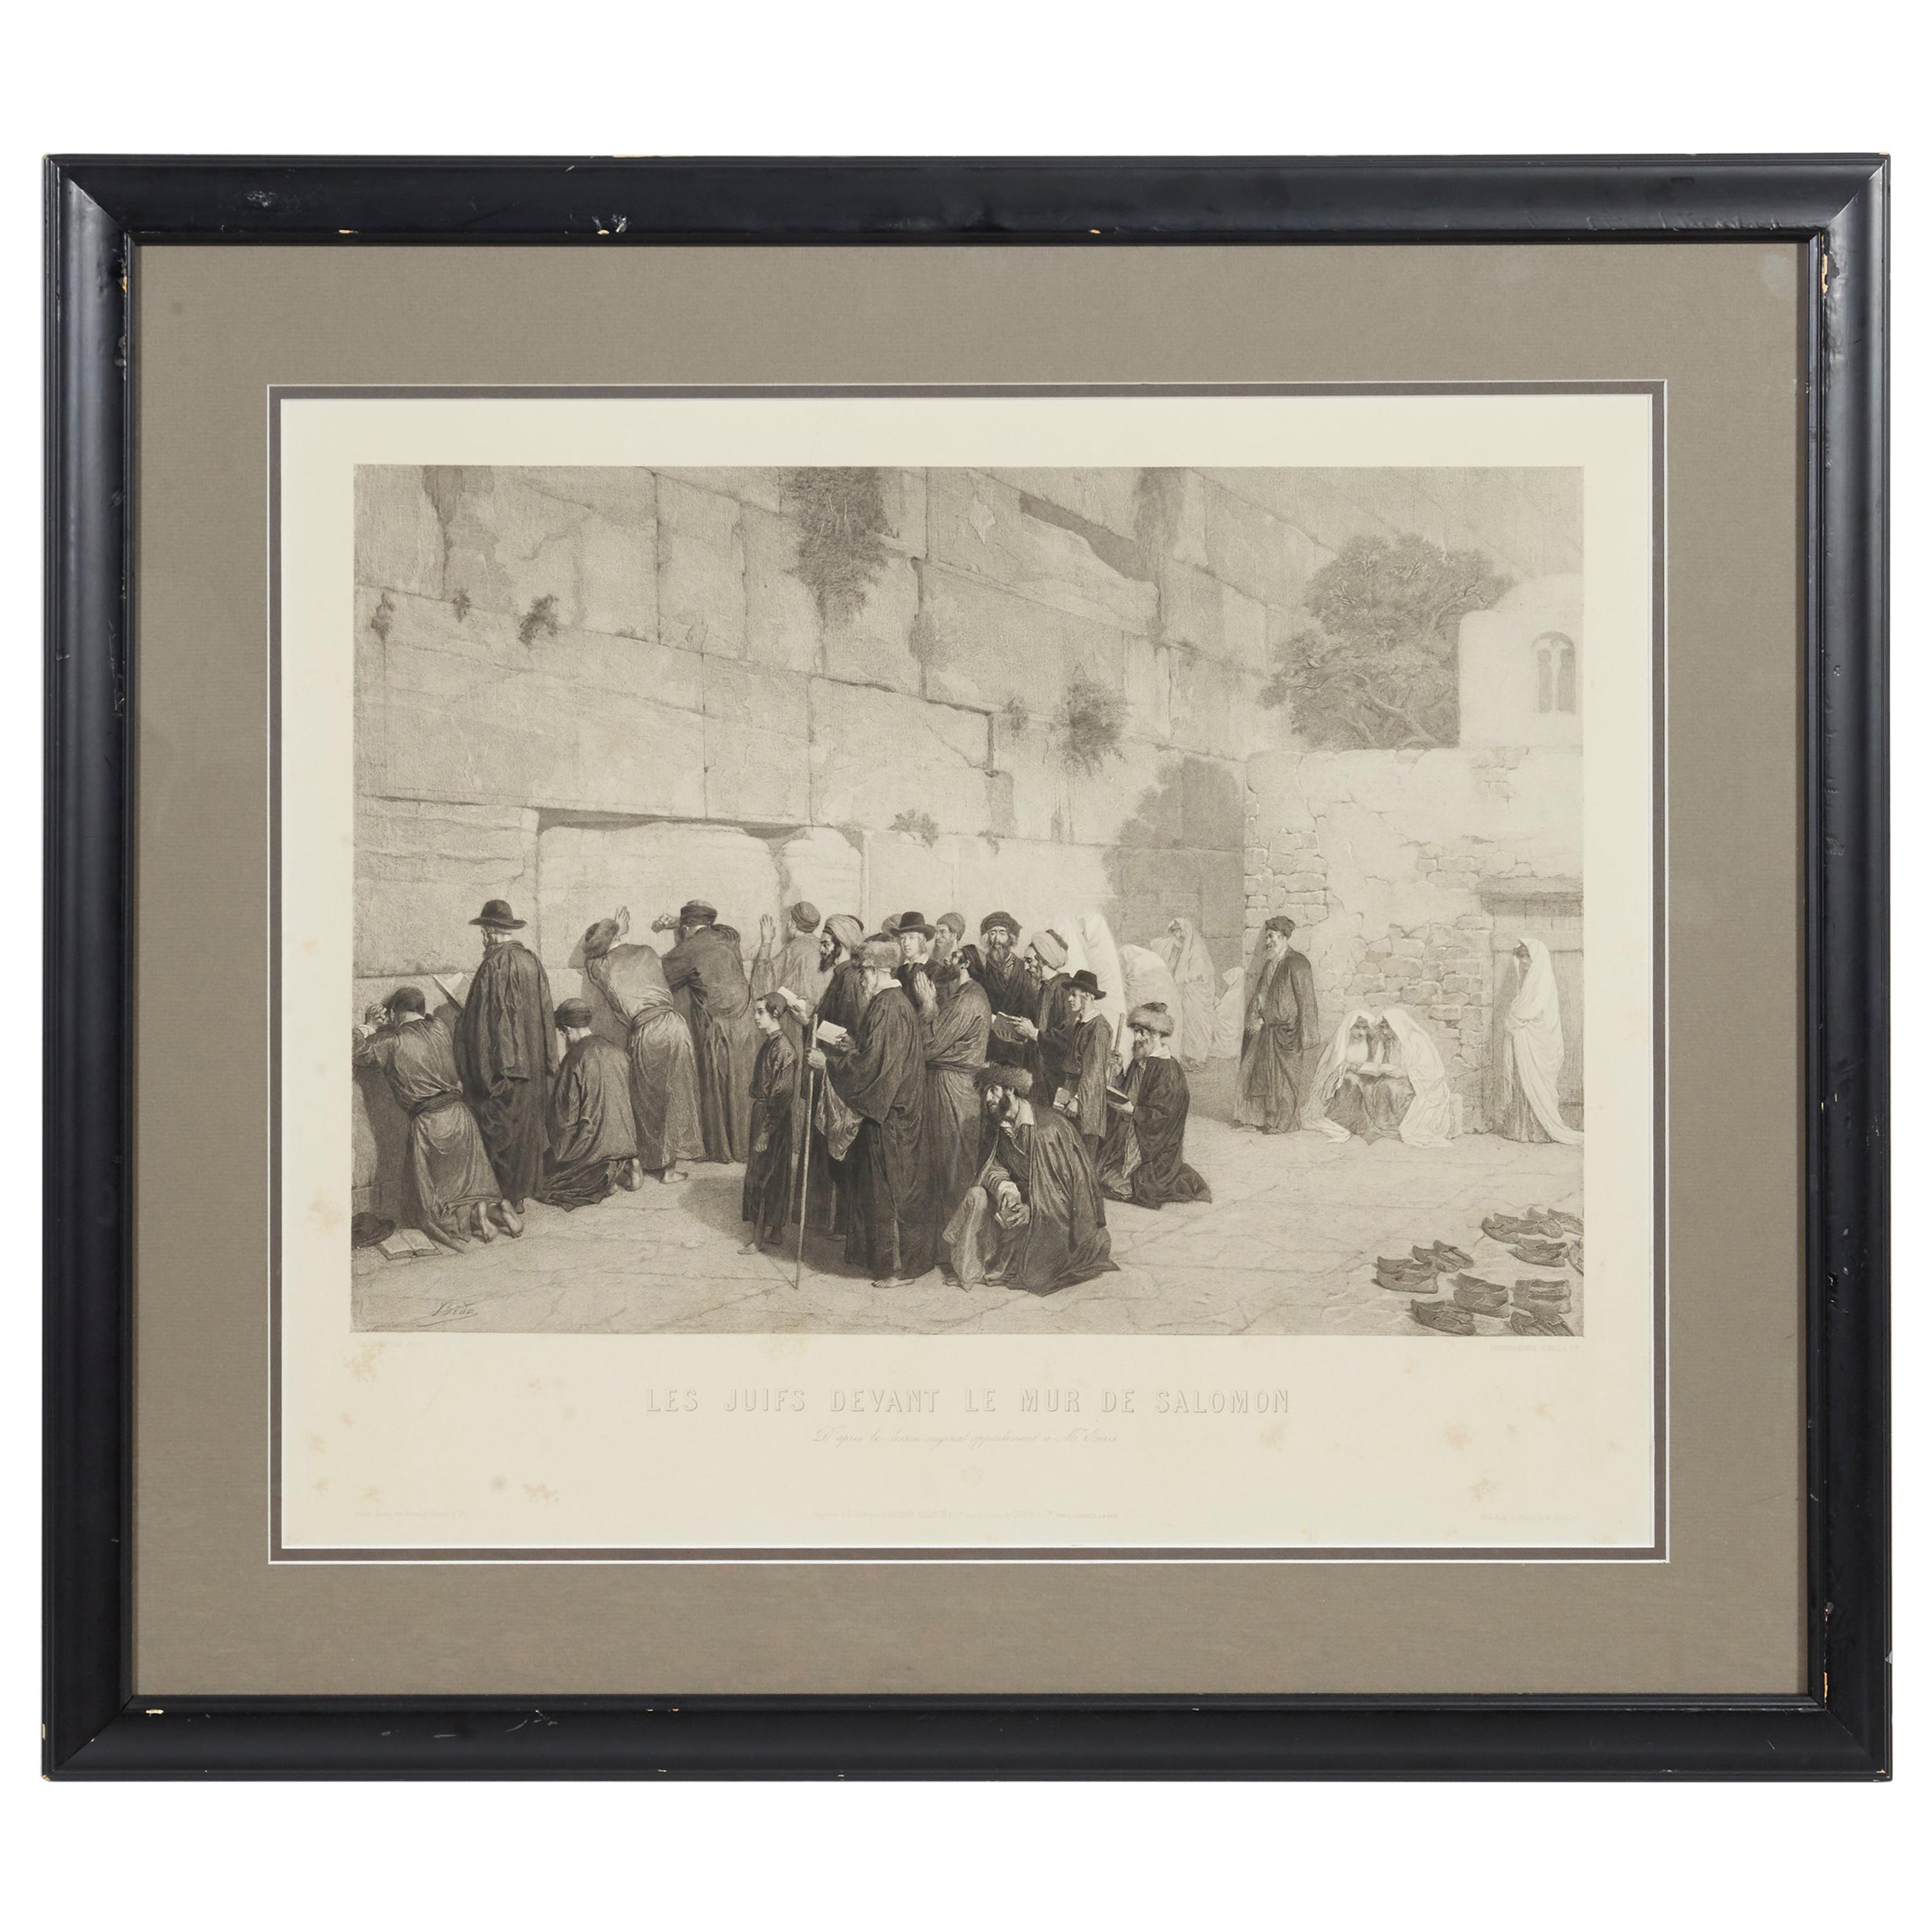 Les Juifs Devant le mur de Salomon, Jews at the Western Wall, Engraving, c. 1880 For Sale